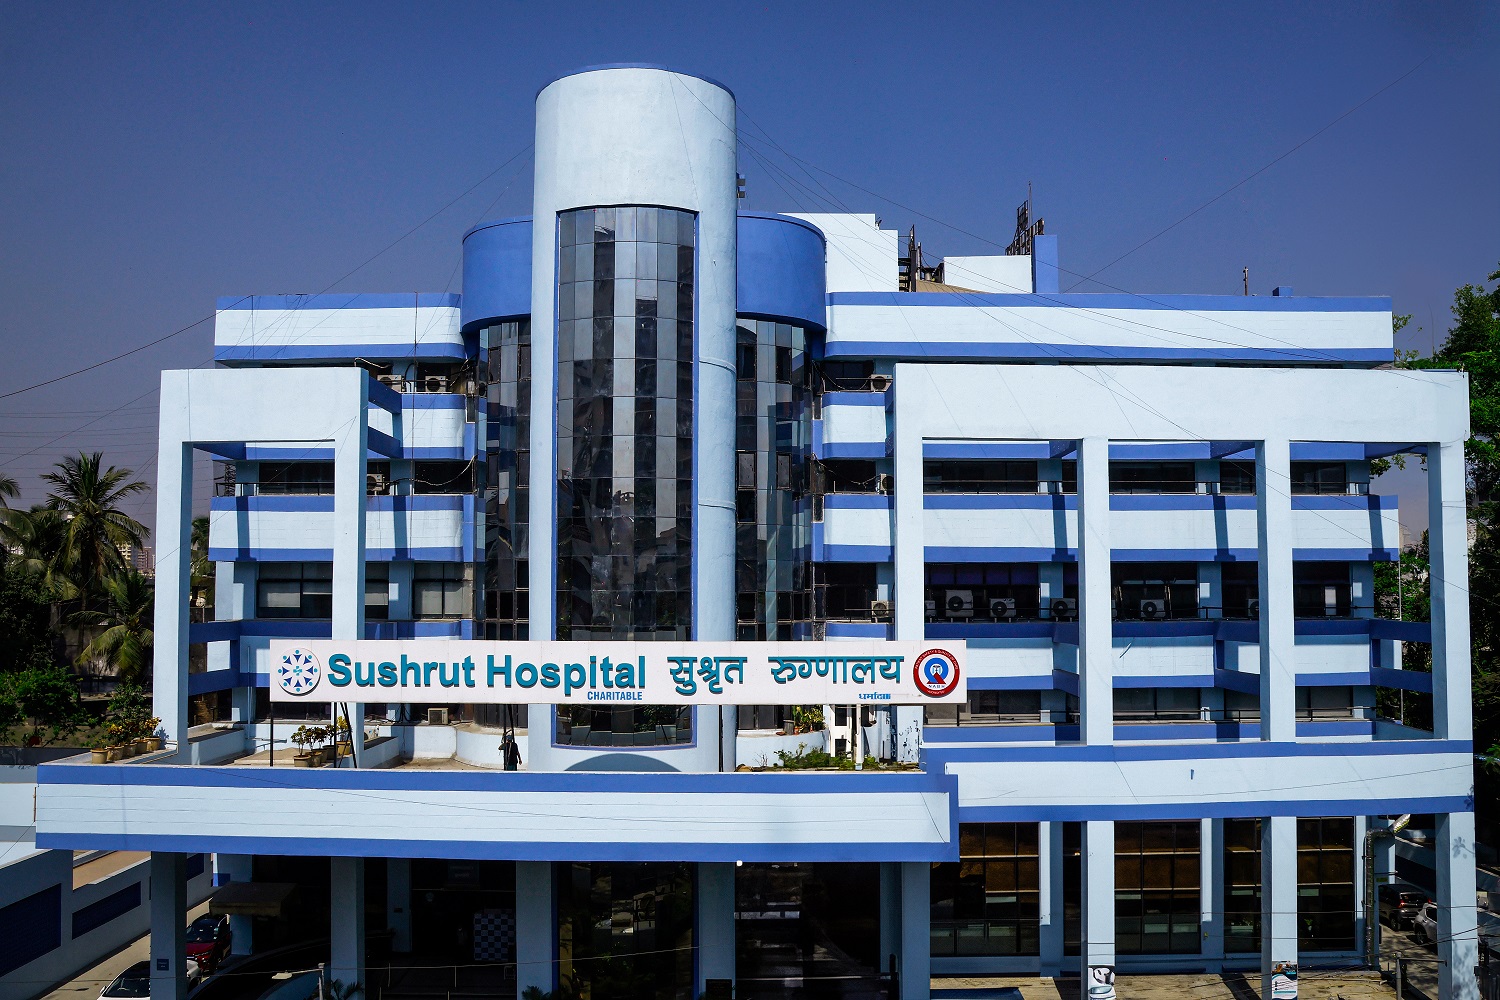 Sushrut Hospital photo